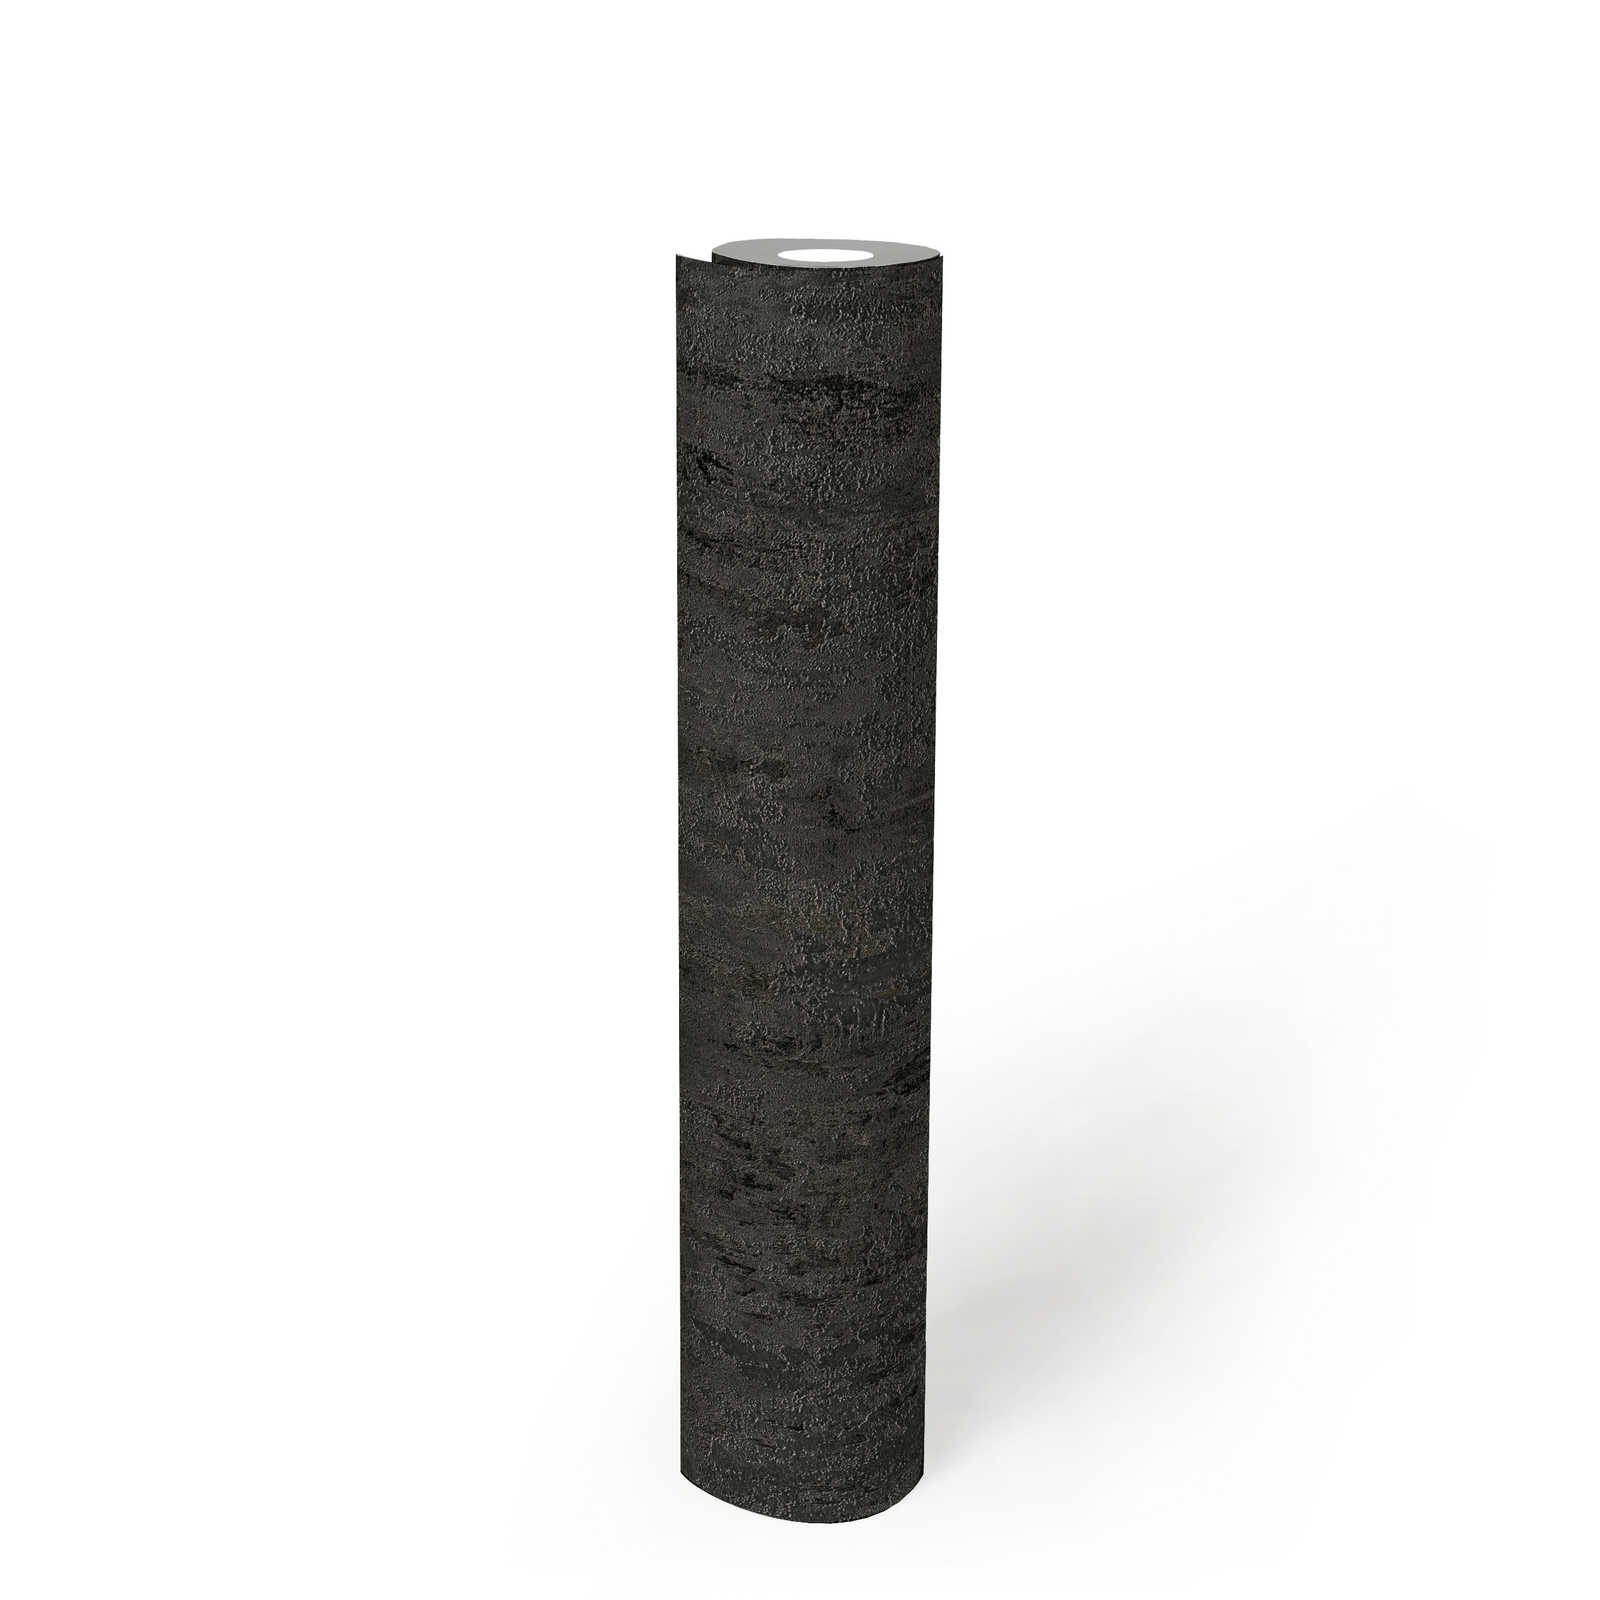             Papier peint structuré rustique aspect métal anthracite - noir, argent, gris
        